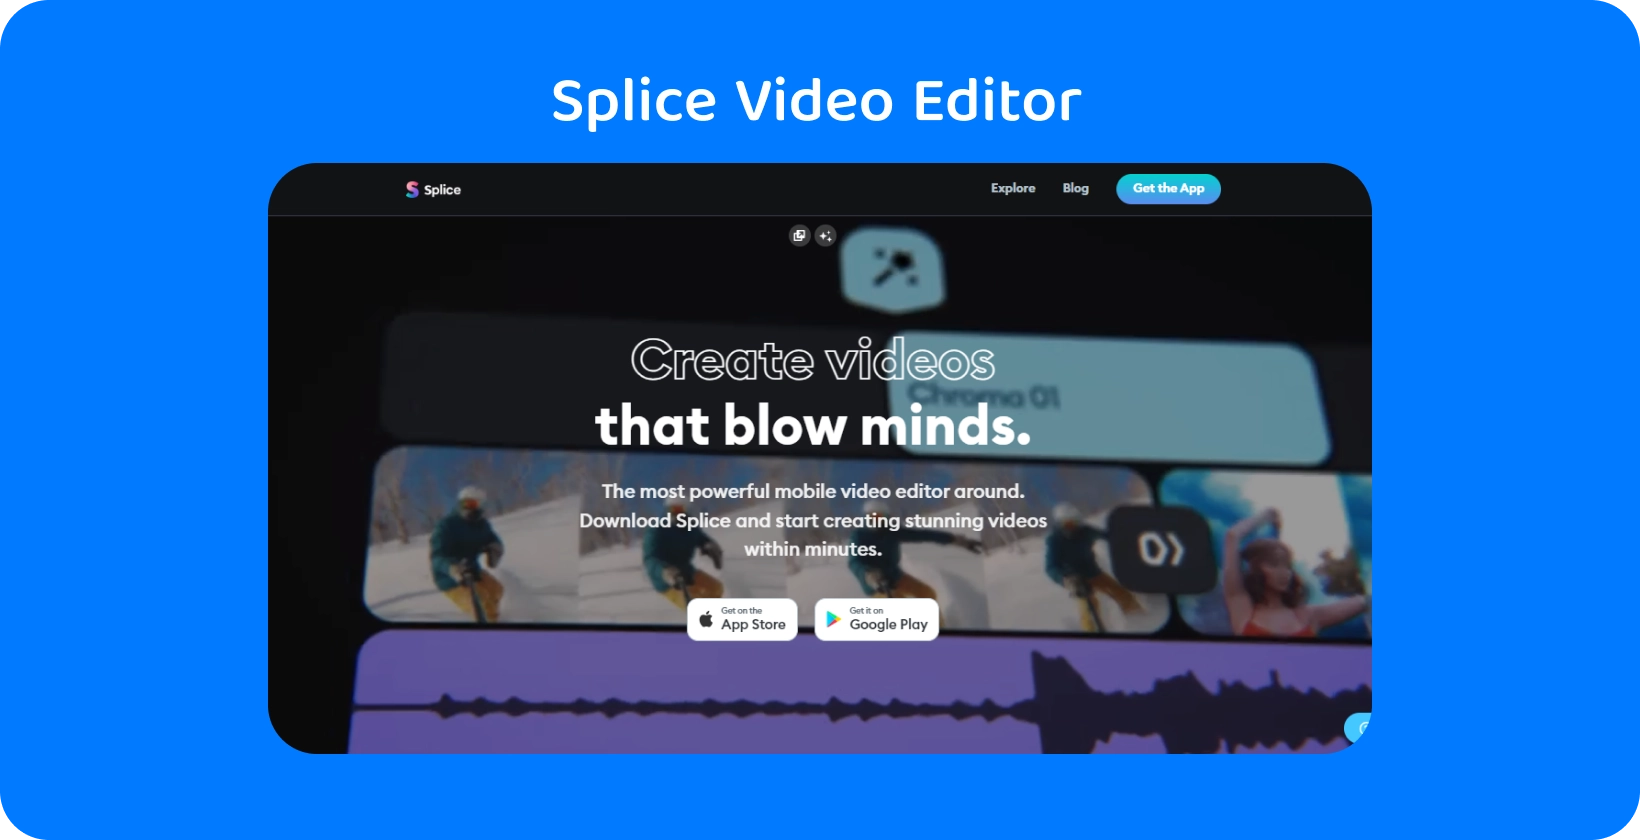 Splice App-Werbung auf einem Smartphone und bewirbt sie als den leistungsstärksten mobilen Video-Editor zum Erstellen atemberaubender Videos.